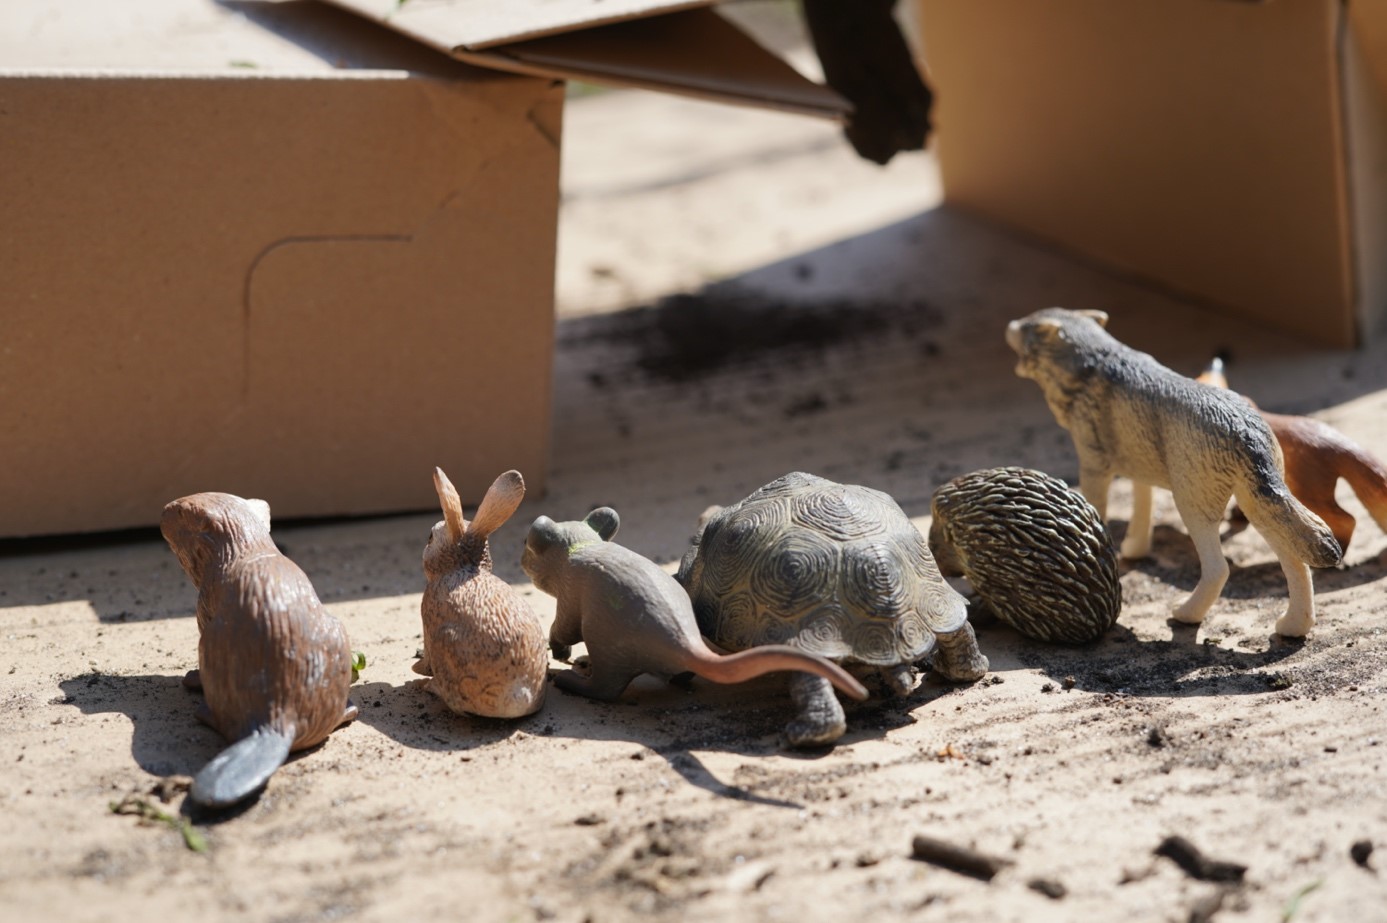 Ein Biber, ein Hase, eine Maus, eine Schildkröte, ein Igel, ein Wolf und ein Fuchs - kleine Waldtiere aus Hartgummi sitzen vor einer Brücke aus Kartons.